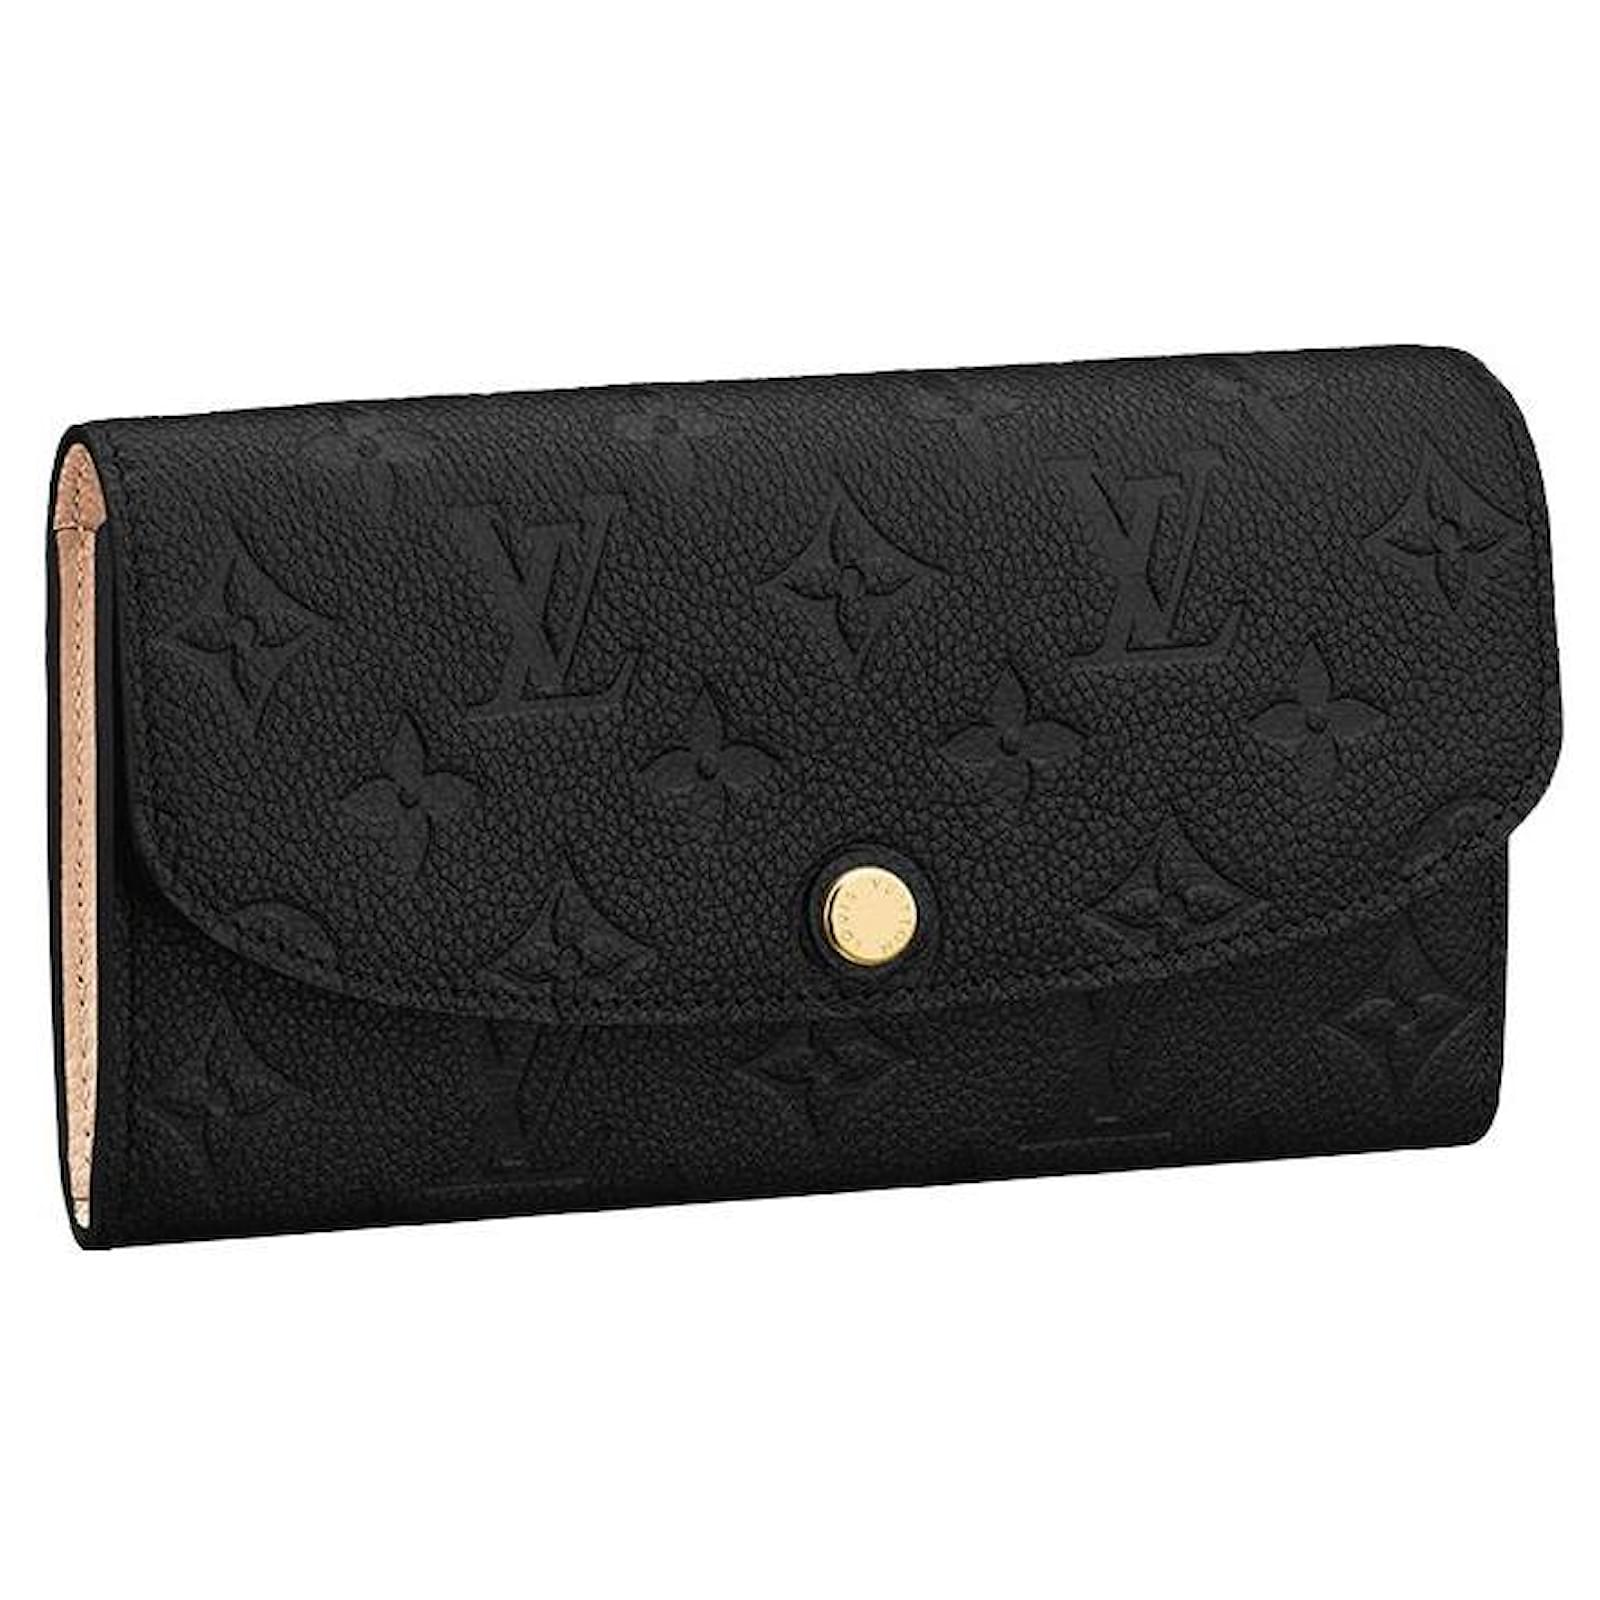 Louis Vuitton Emilie Monogram Empreinte Leather Wallet on SALE